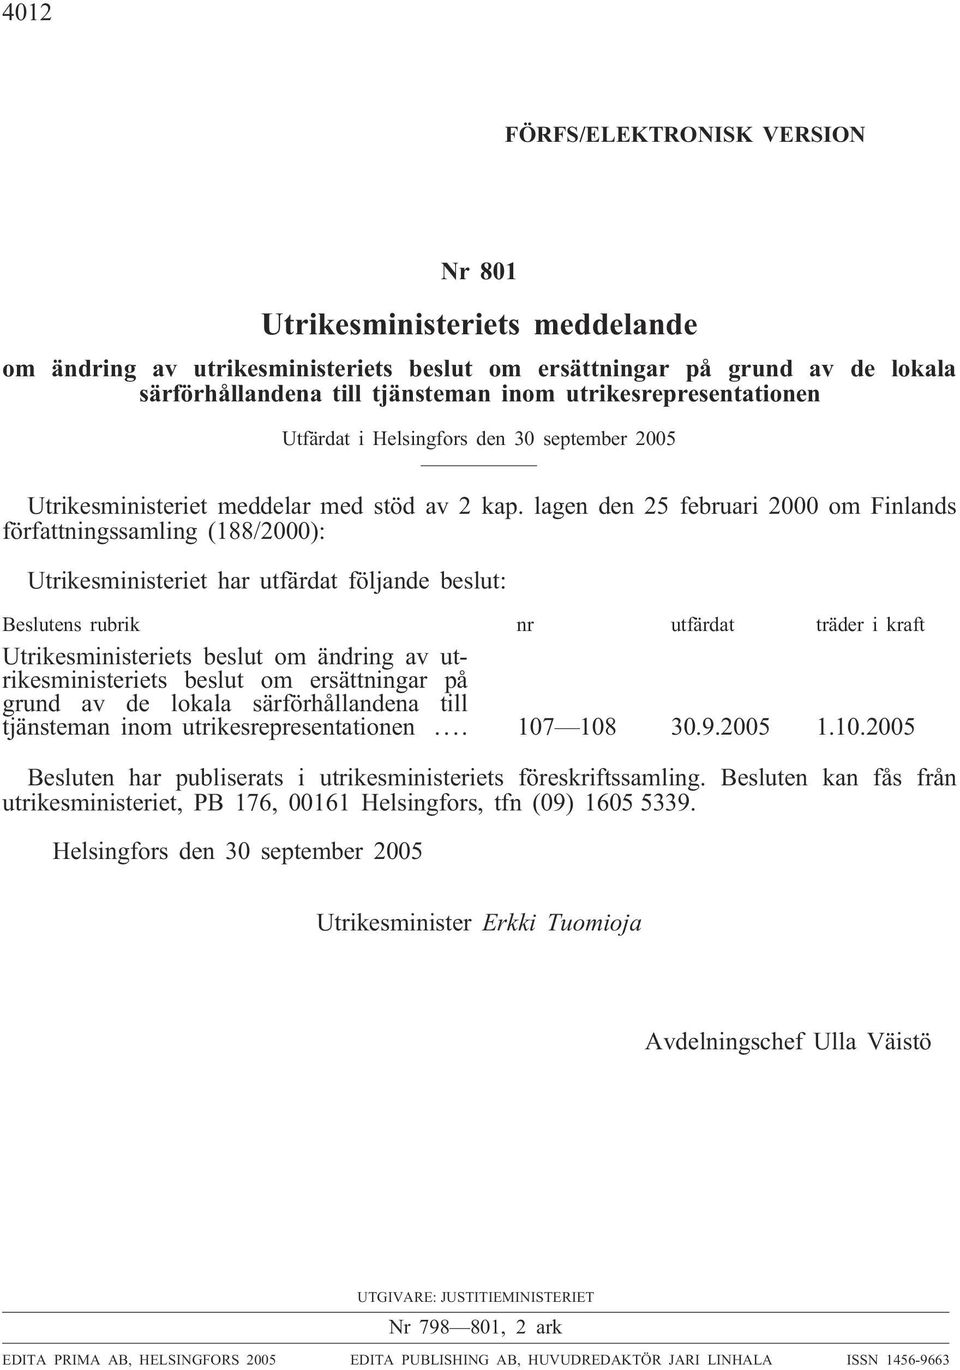 lagen den 25 februar 2000 om Fnlands författnngssamlng (88/2000): Utrkesmnsteret har utfärdat följande beslut: Beslutens rubrk nr utfärdat träder kraft Utrkesmnsterets beslut om ändrng a